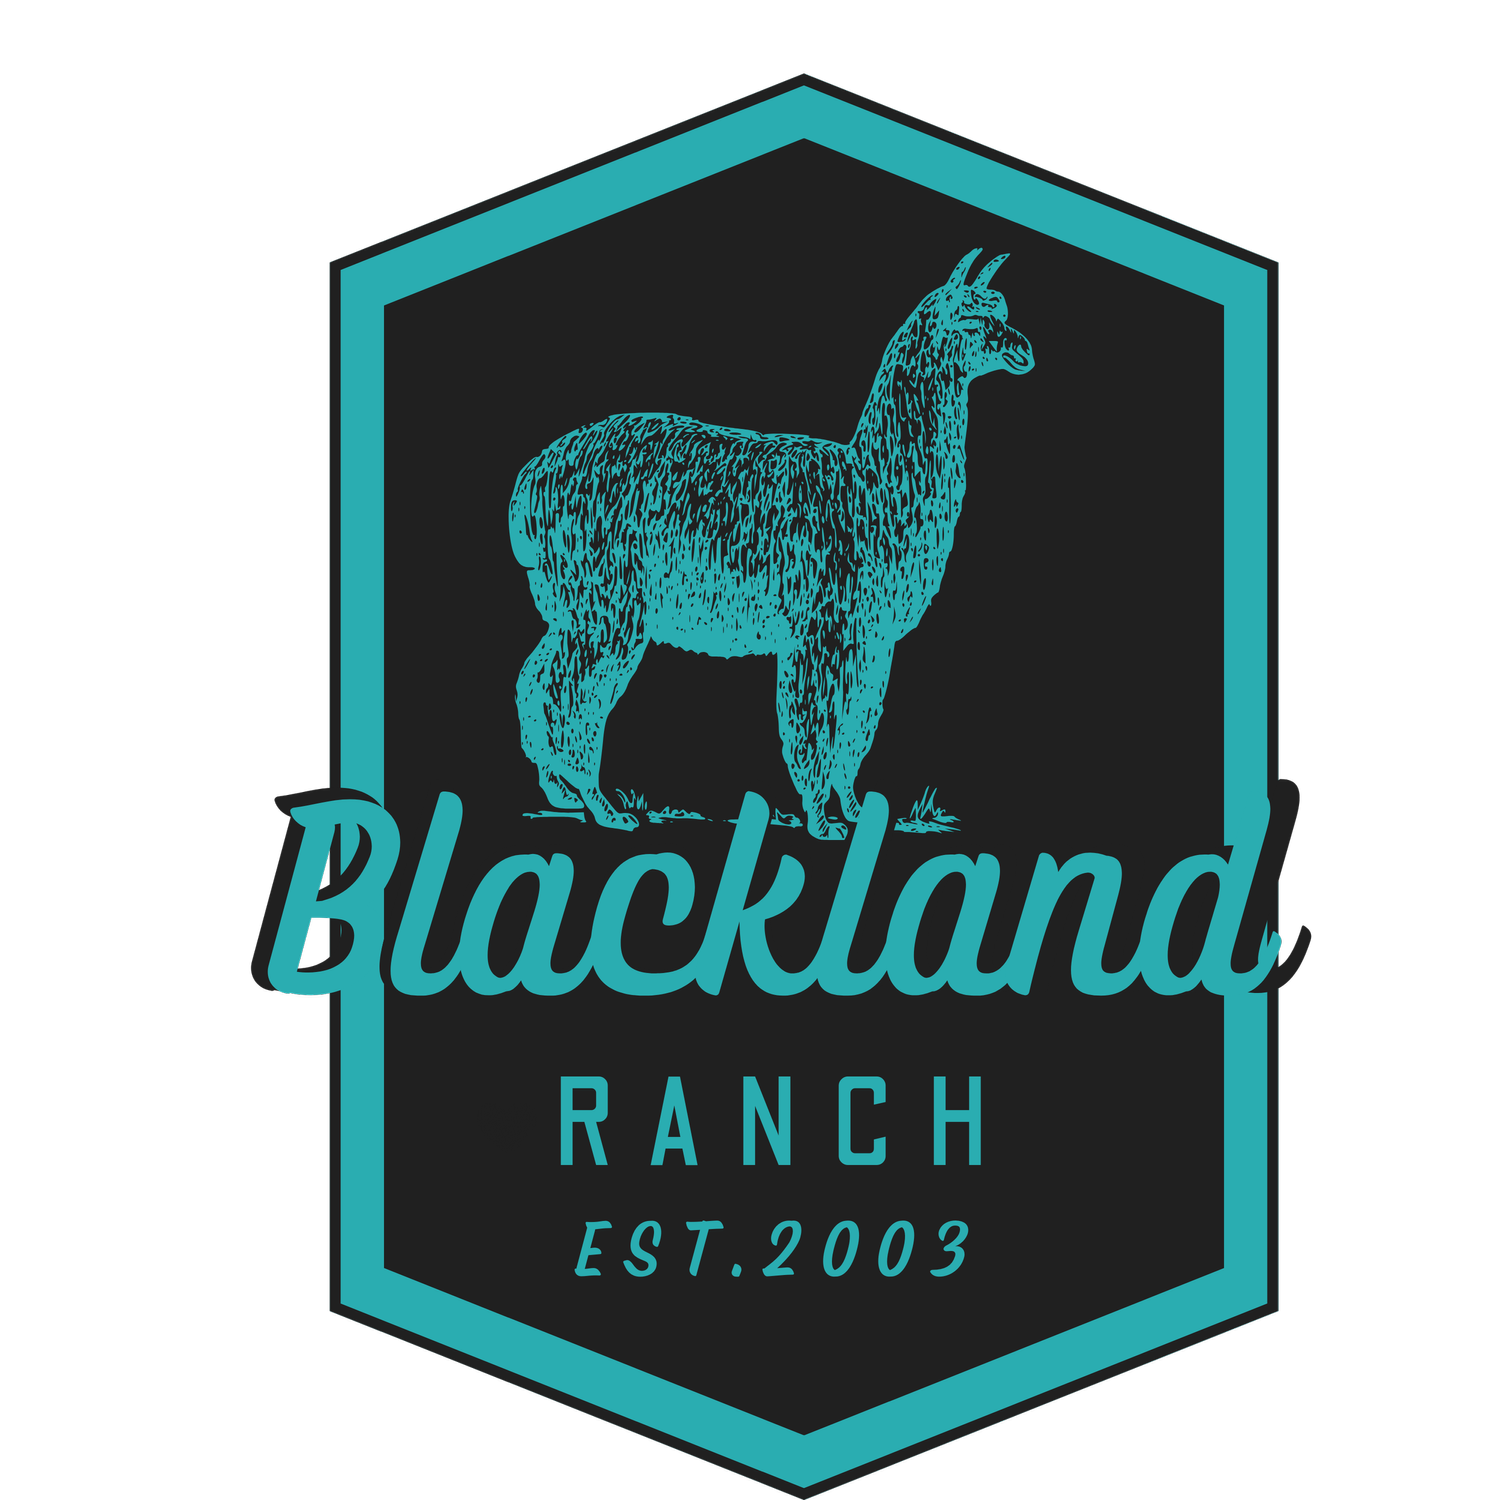 BLACKLAND RANCH